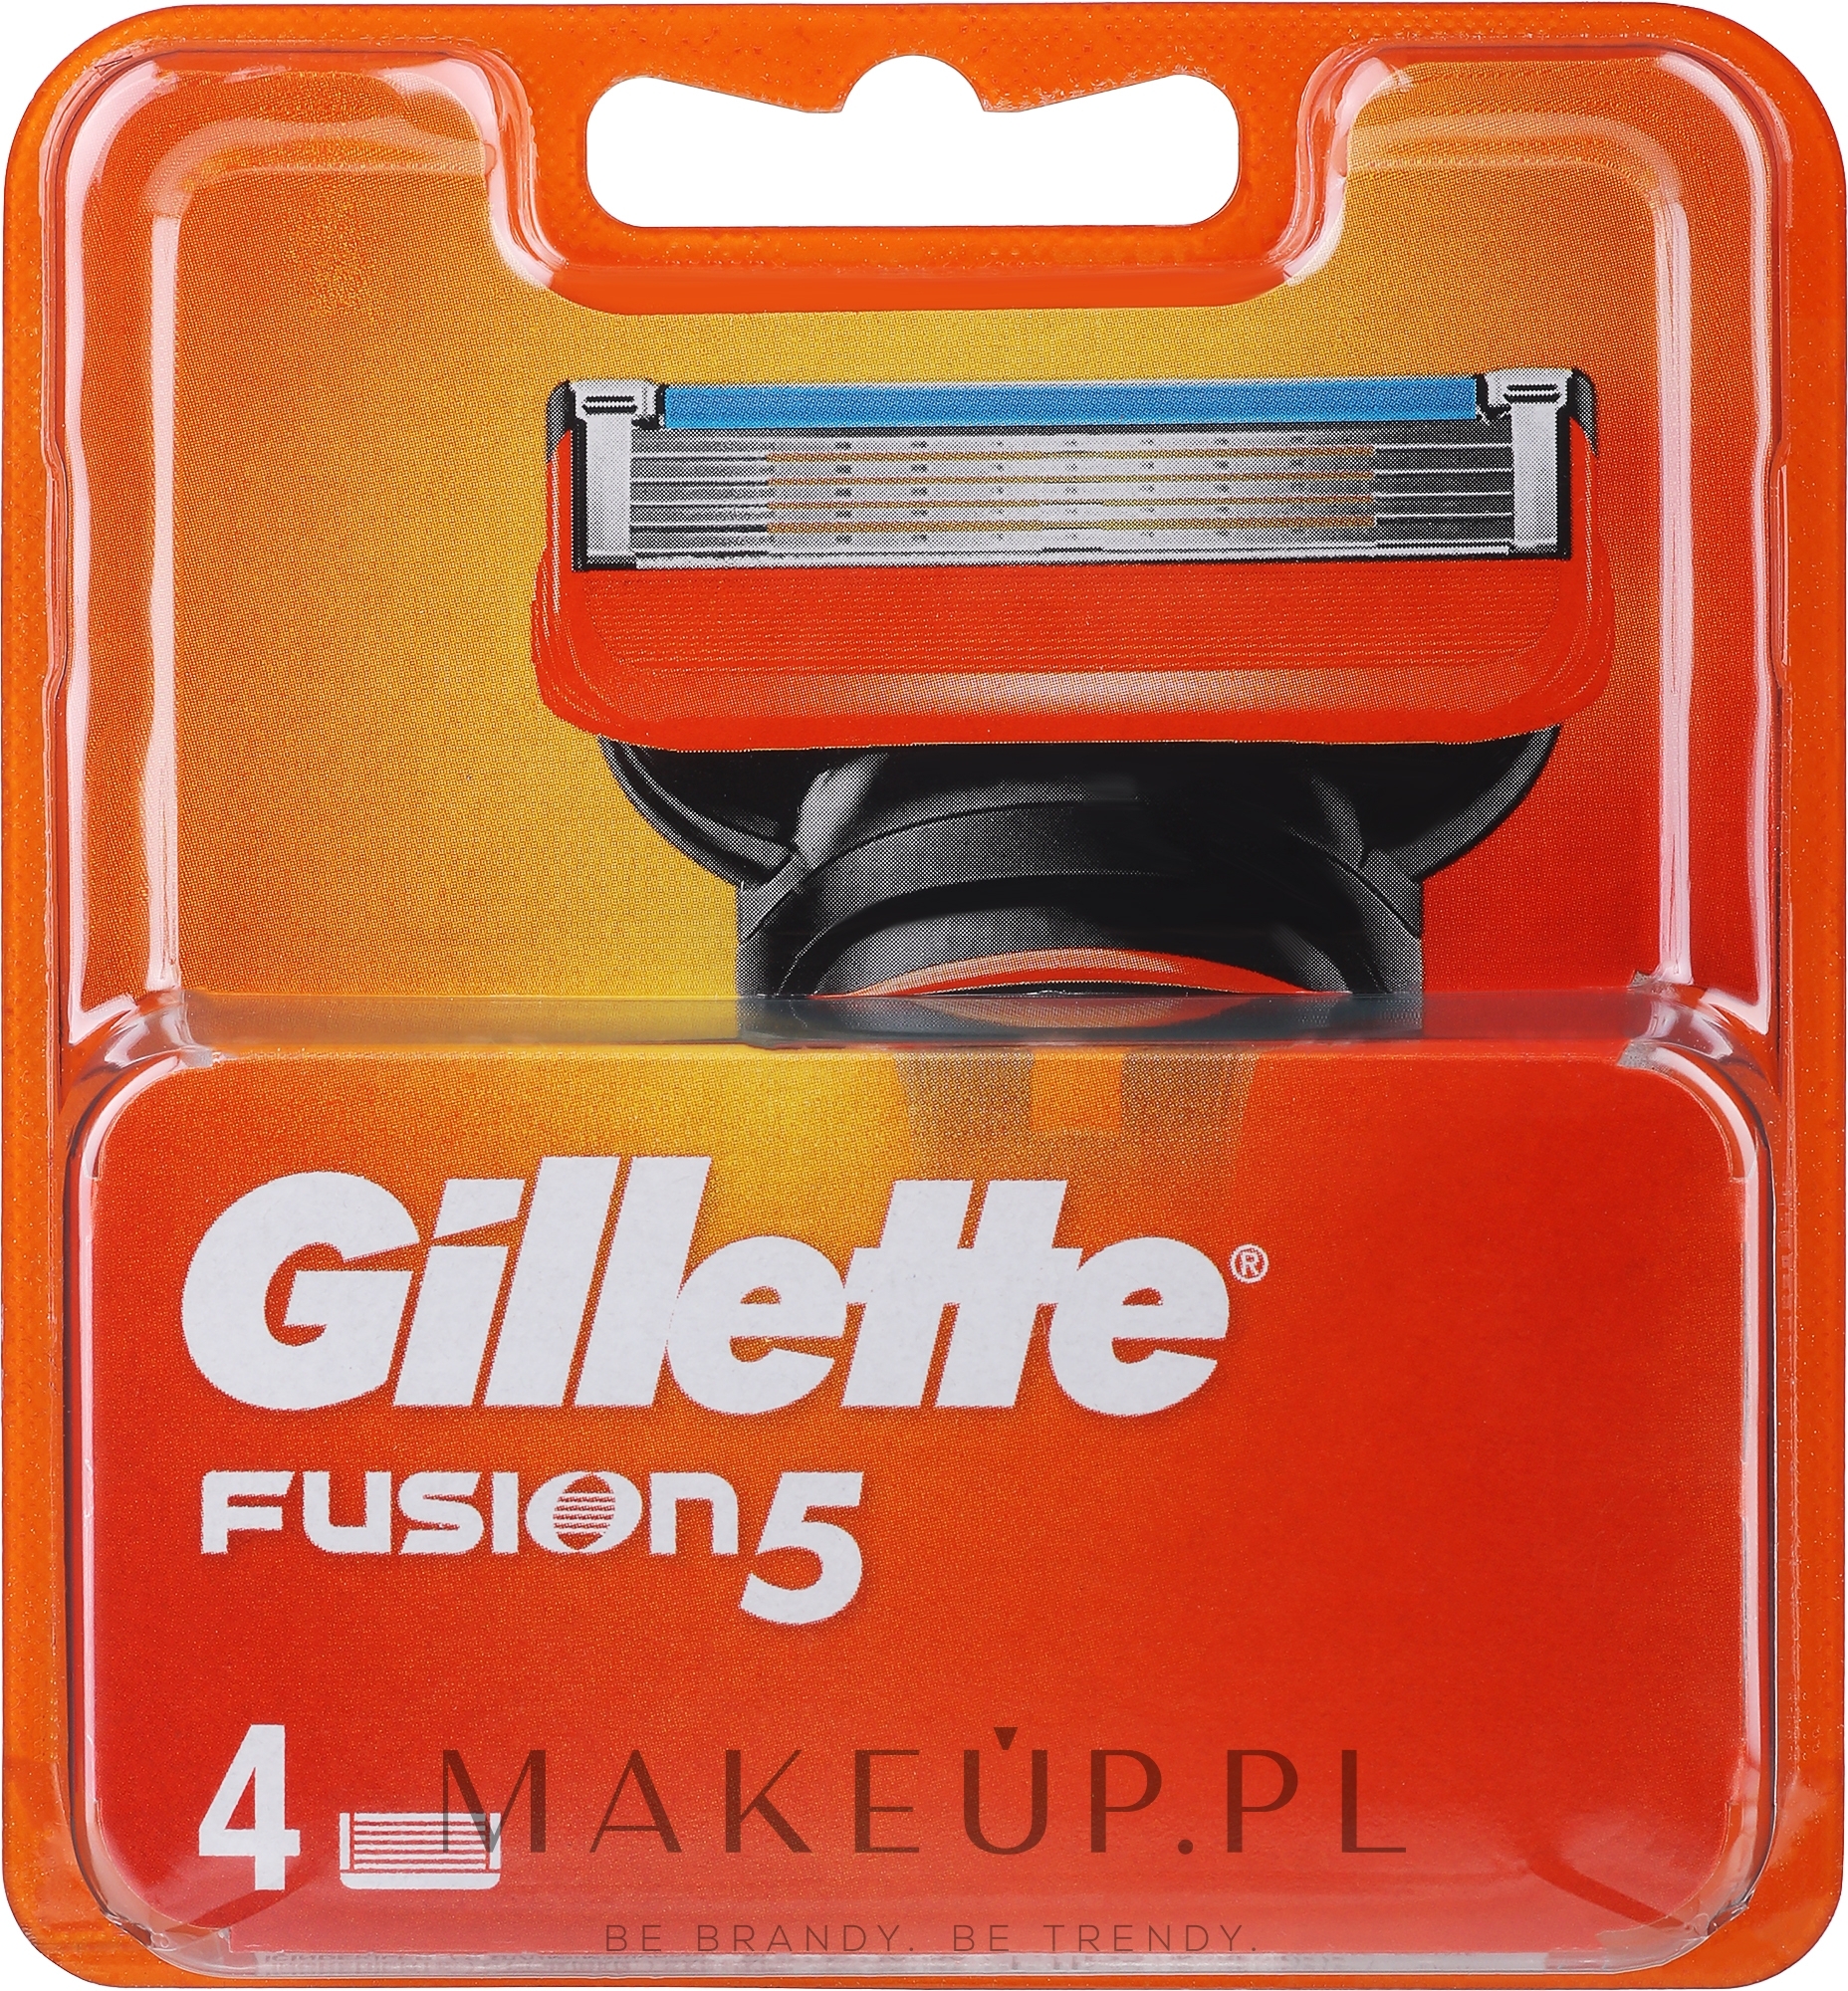 Wymienne wkłady do maszynki, 4 szt. - Gillette Fusion 5 — Zdjęcie 4 szt.